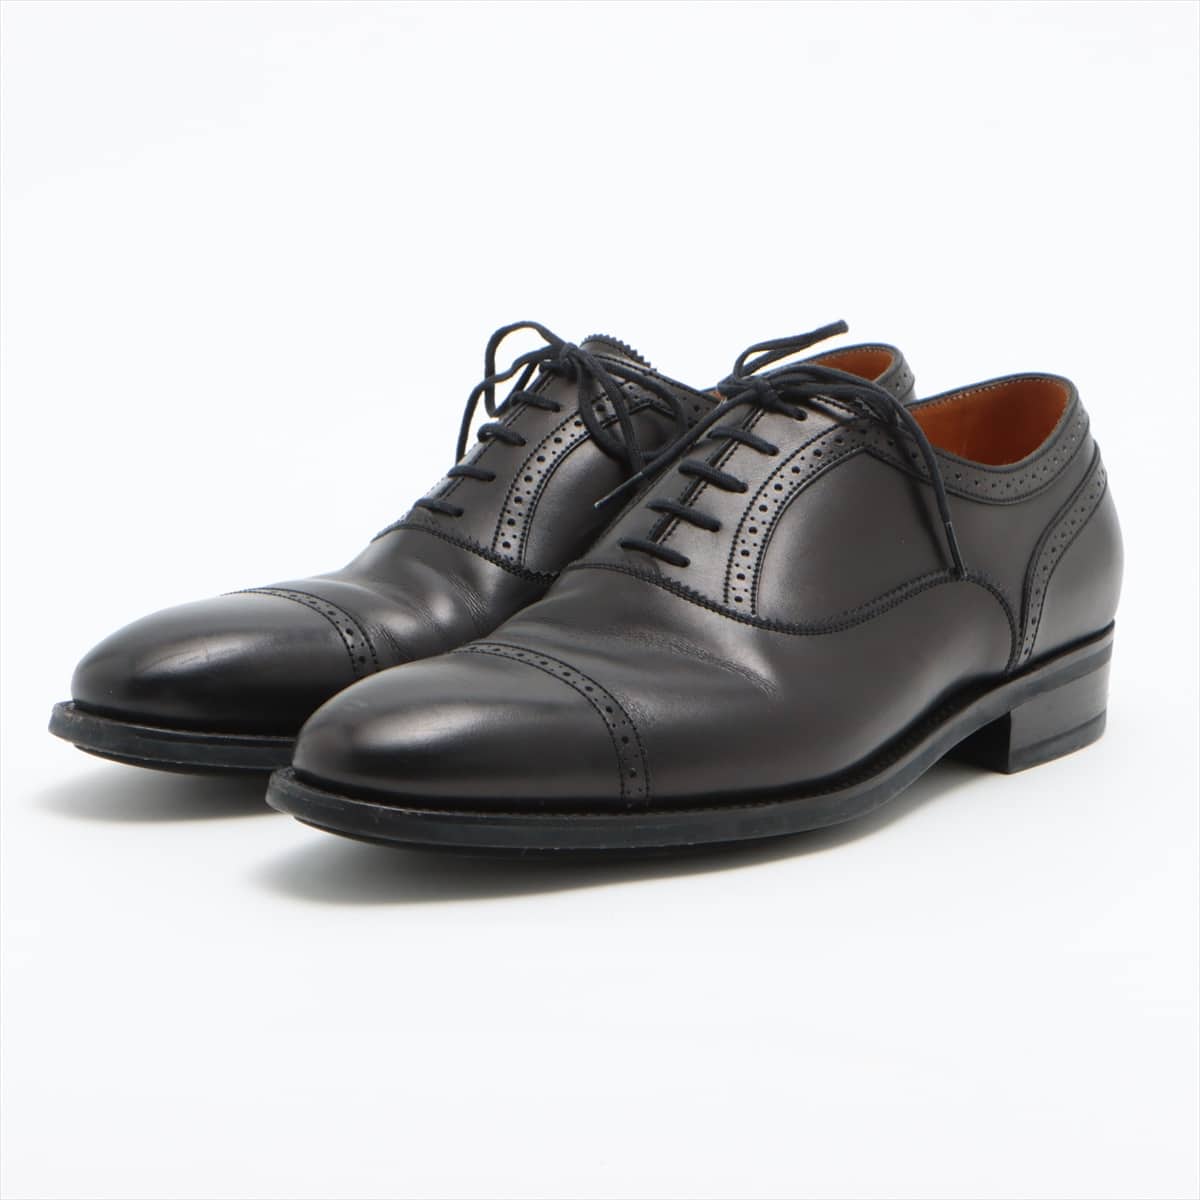 J. M. Weston Leather Leather shoes 6D Men's Black 478 punched cap toe